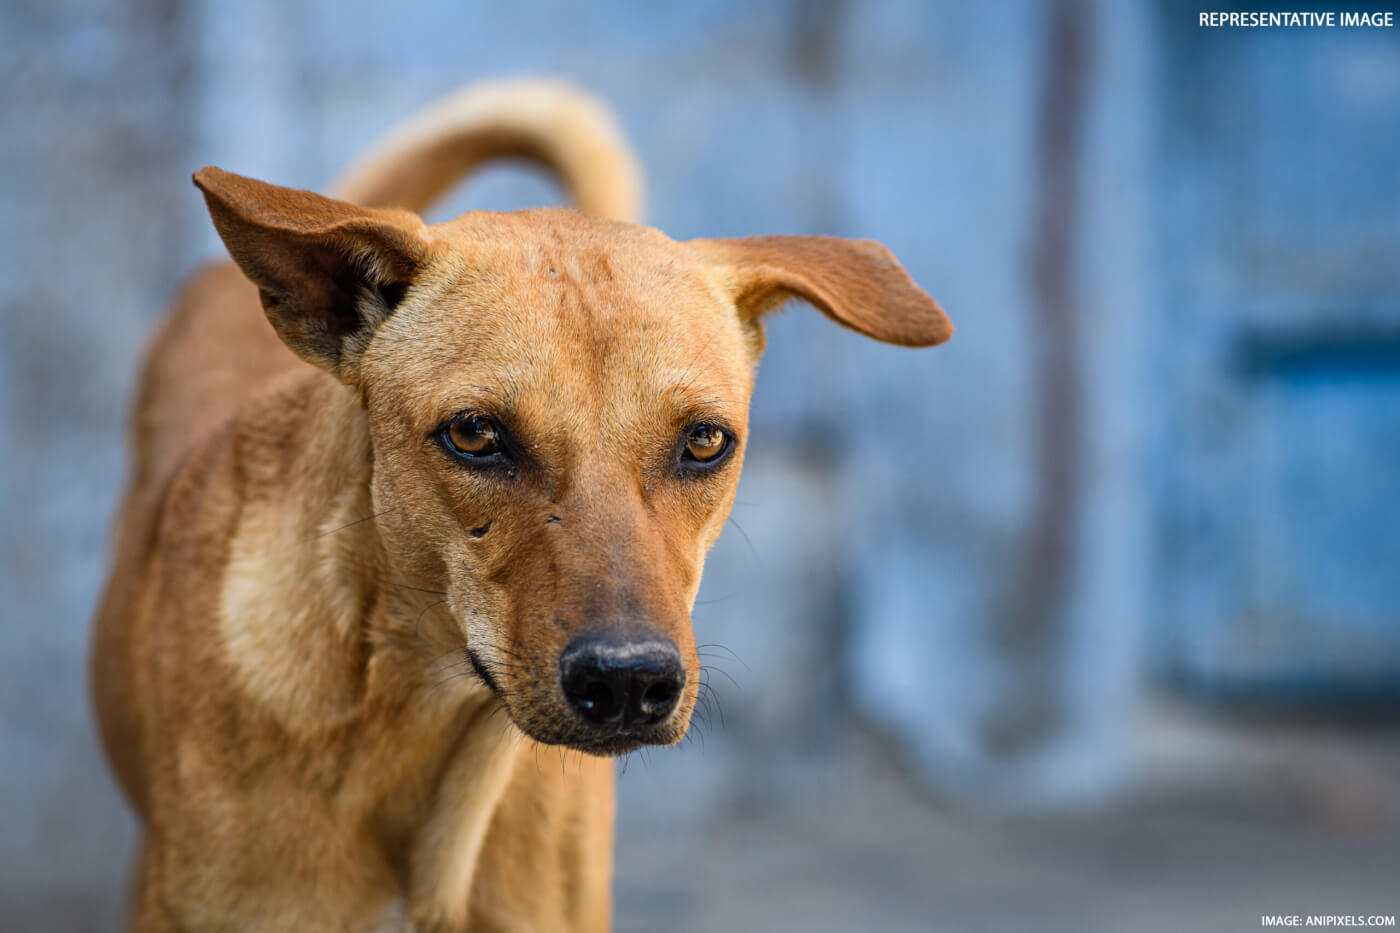 दिल्ली पुलिस ने कुत्ते को अपाहिज बनाने के खिलाफ़ मामला दर्ज़ किया; PETA इंडिया ने गिरफ्तारी के लिए सूचना देने वाले को 50,000 रुपये तक का इनाम देने की घोषणा की